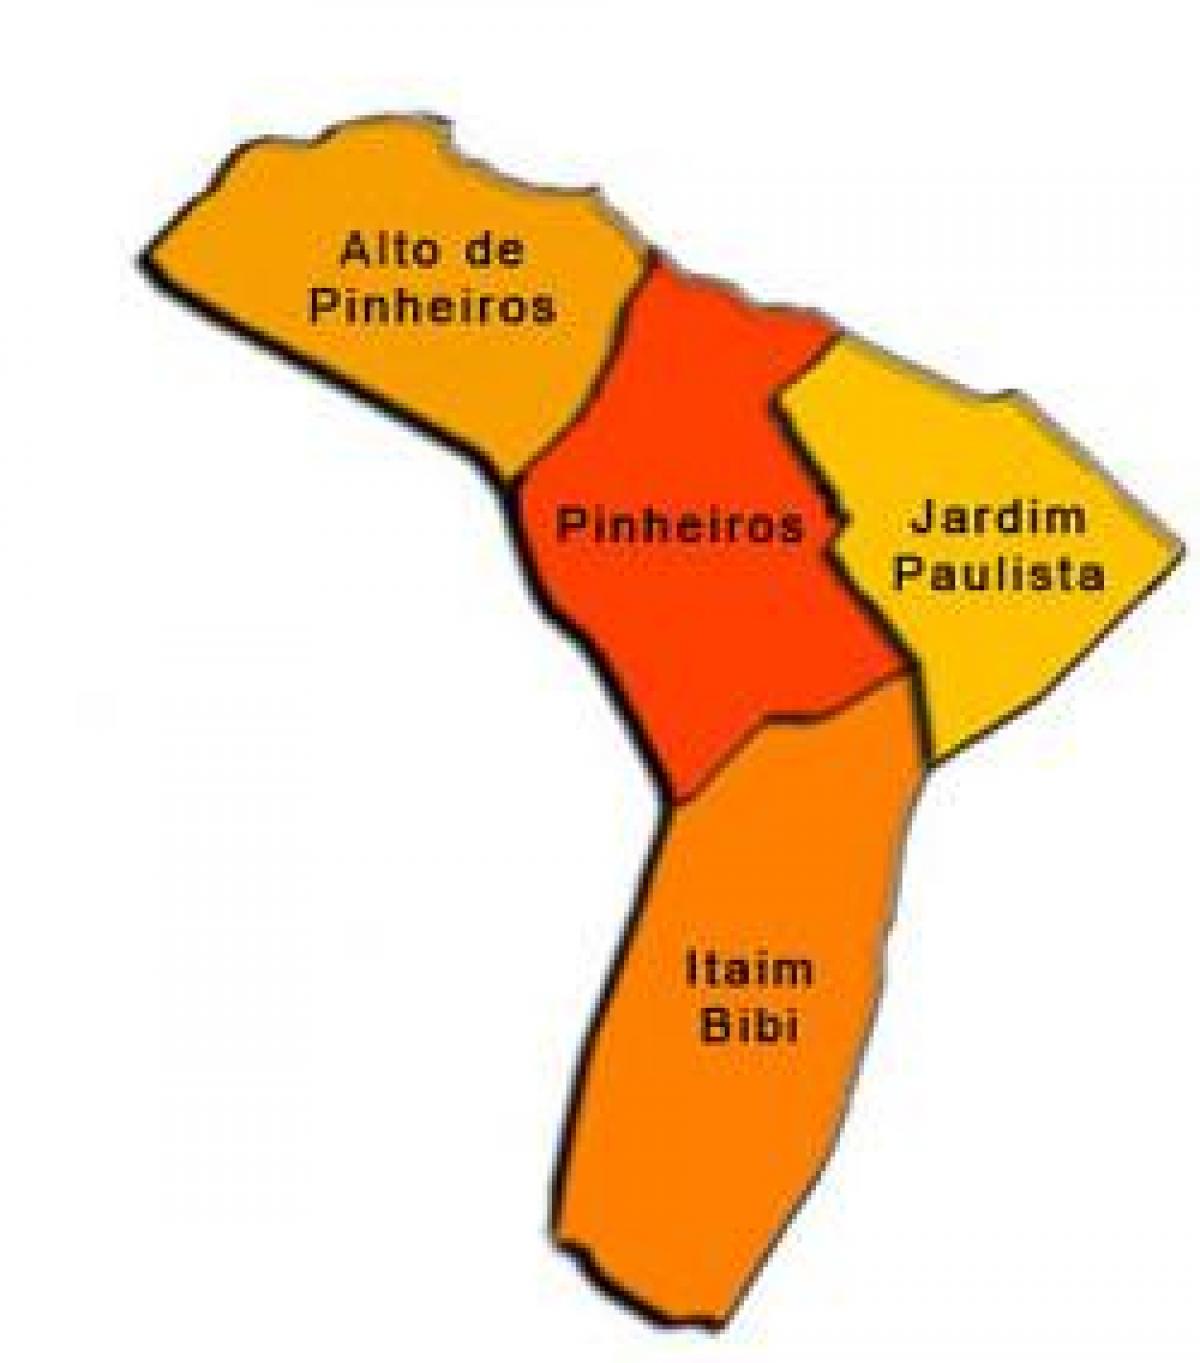 რუკა Pinheiros sub-prefecture